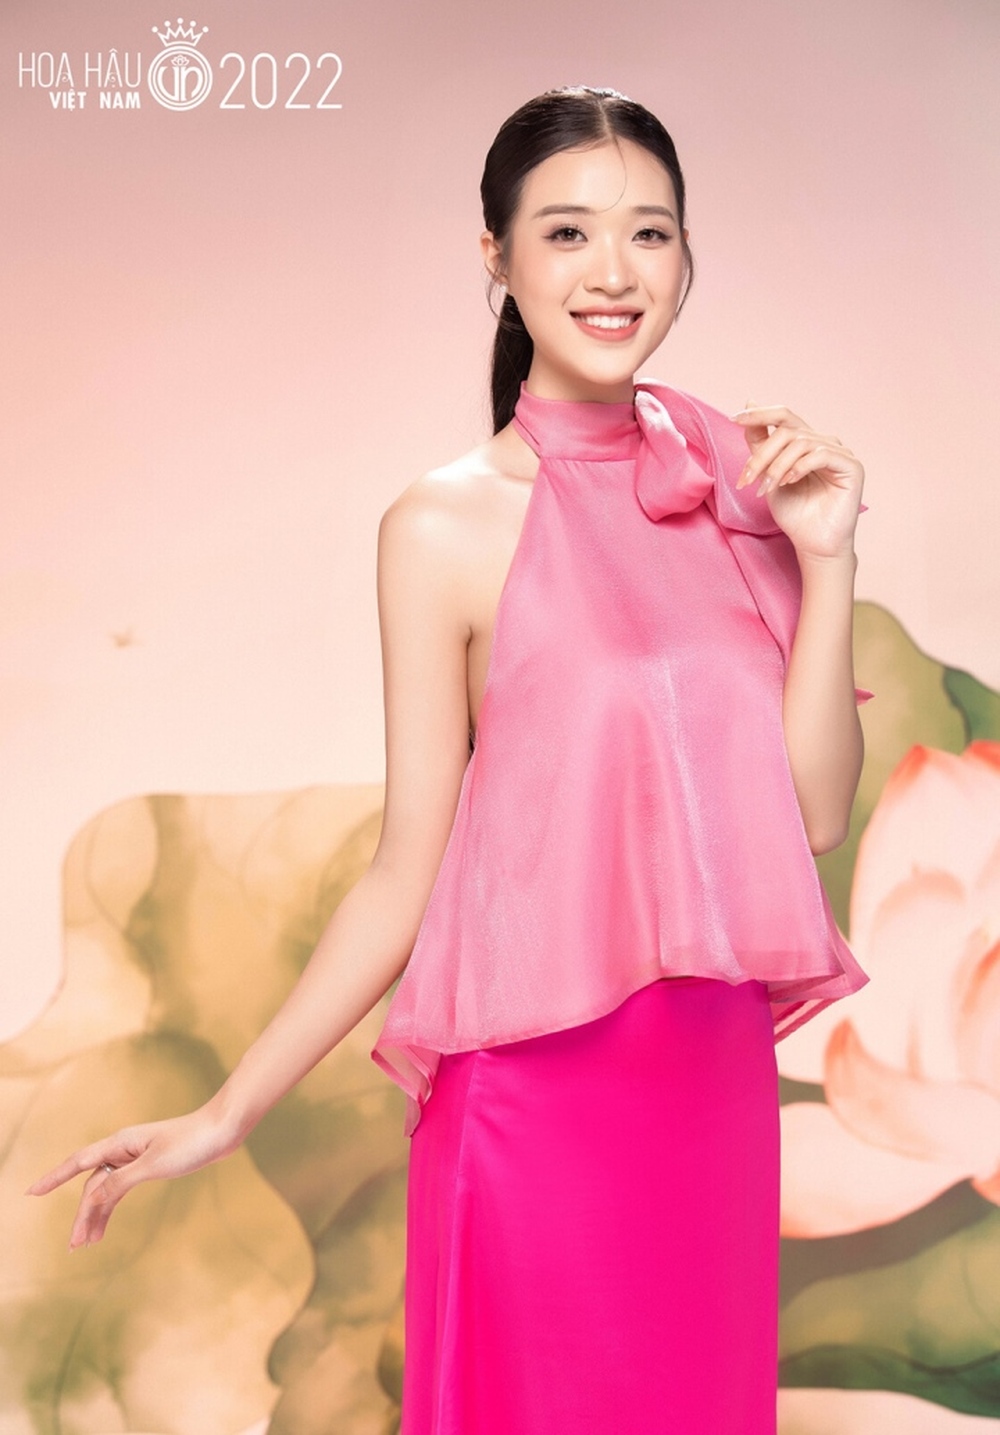 Ảnh chân dung trong veo, ngọt ngào của dàn thí sinh Hoa hậu Việt Nam 2022 - Ảnh 5.